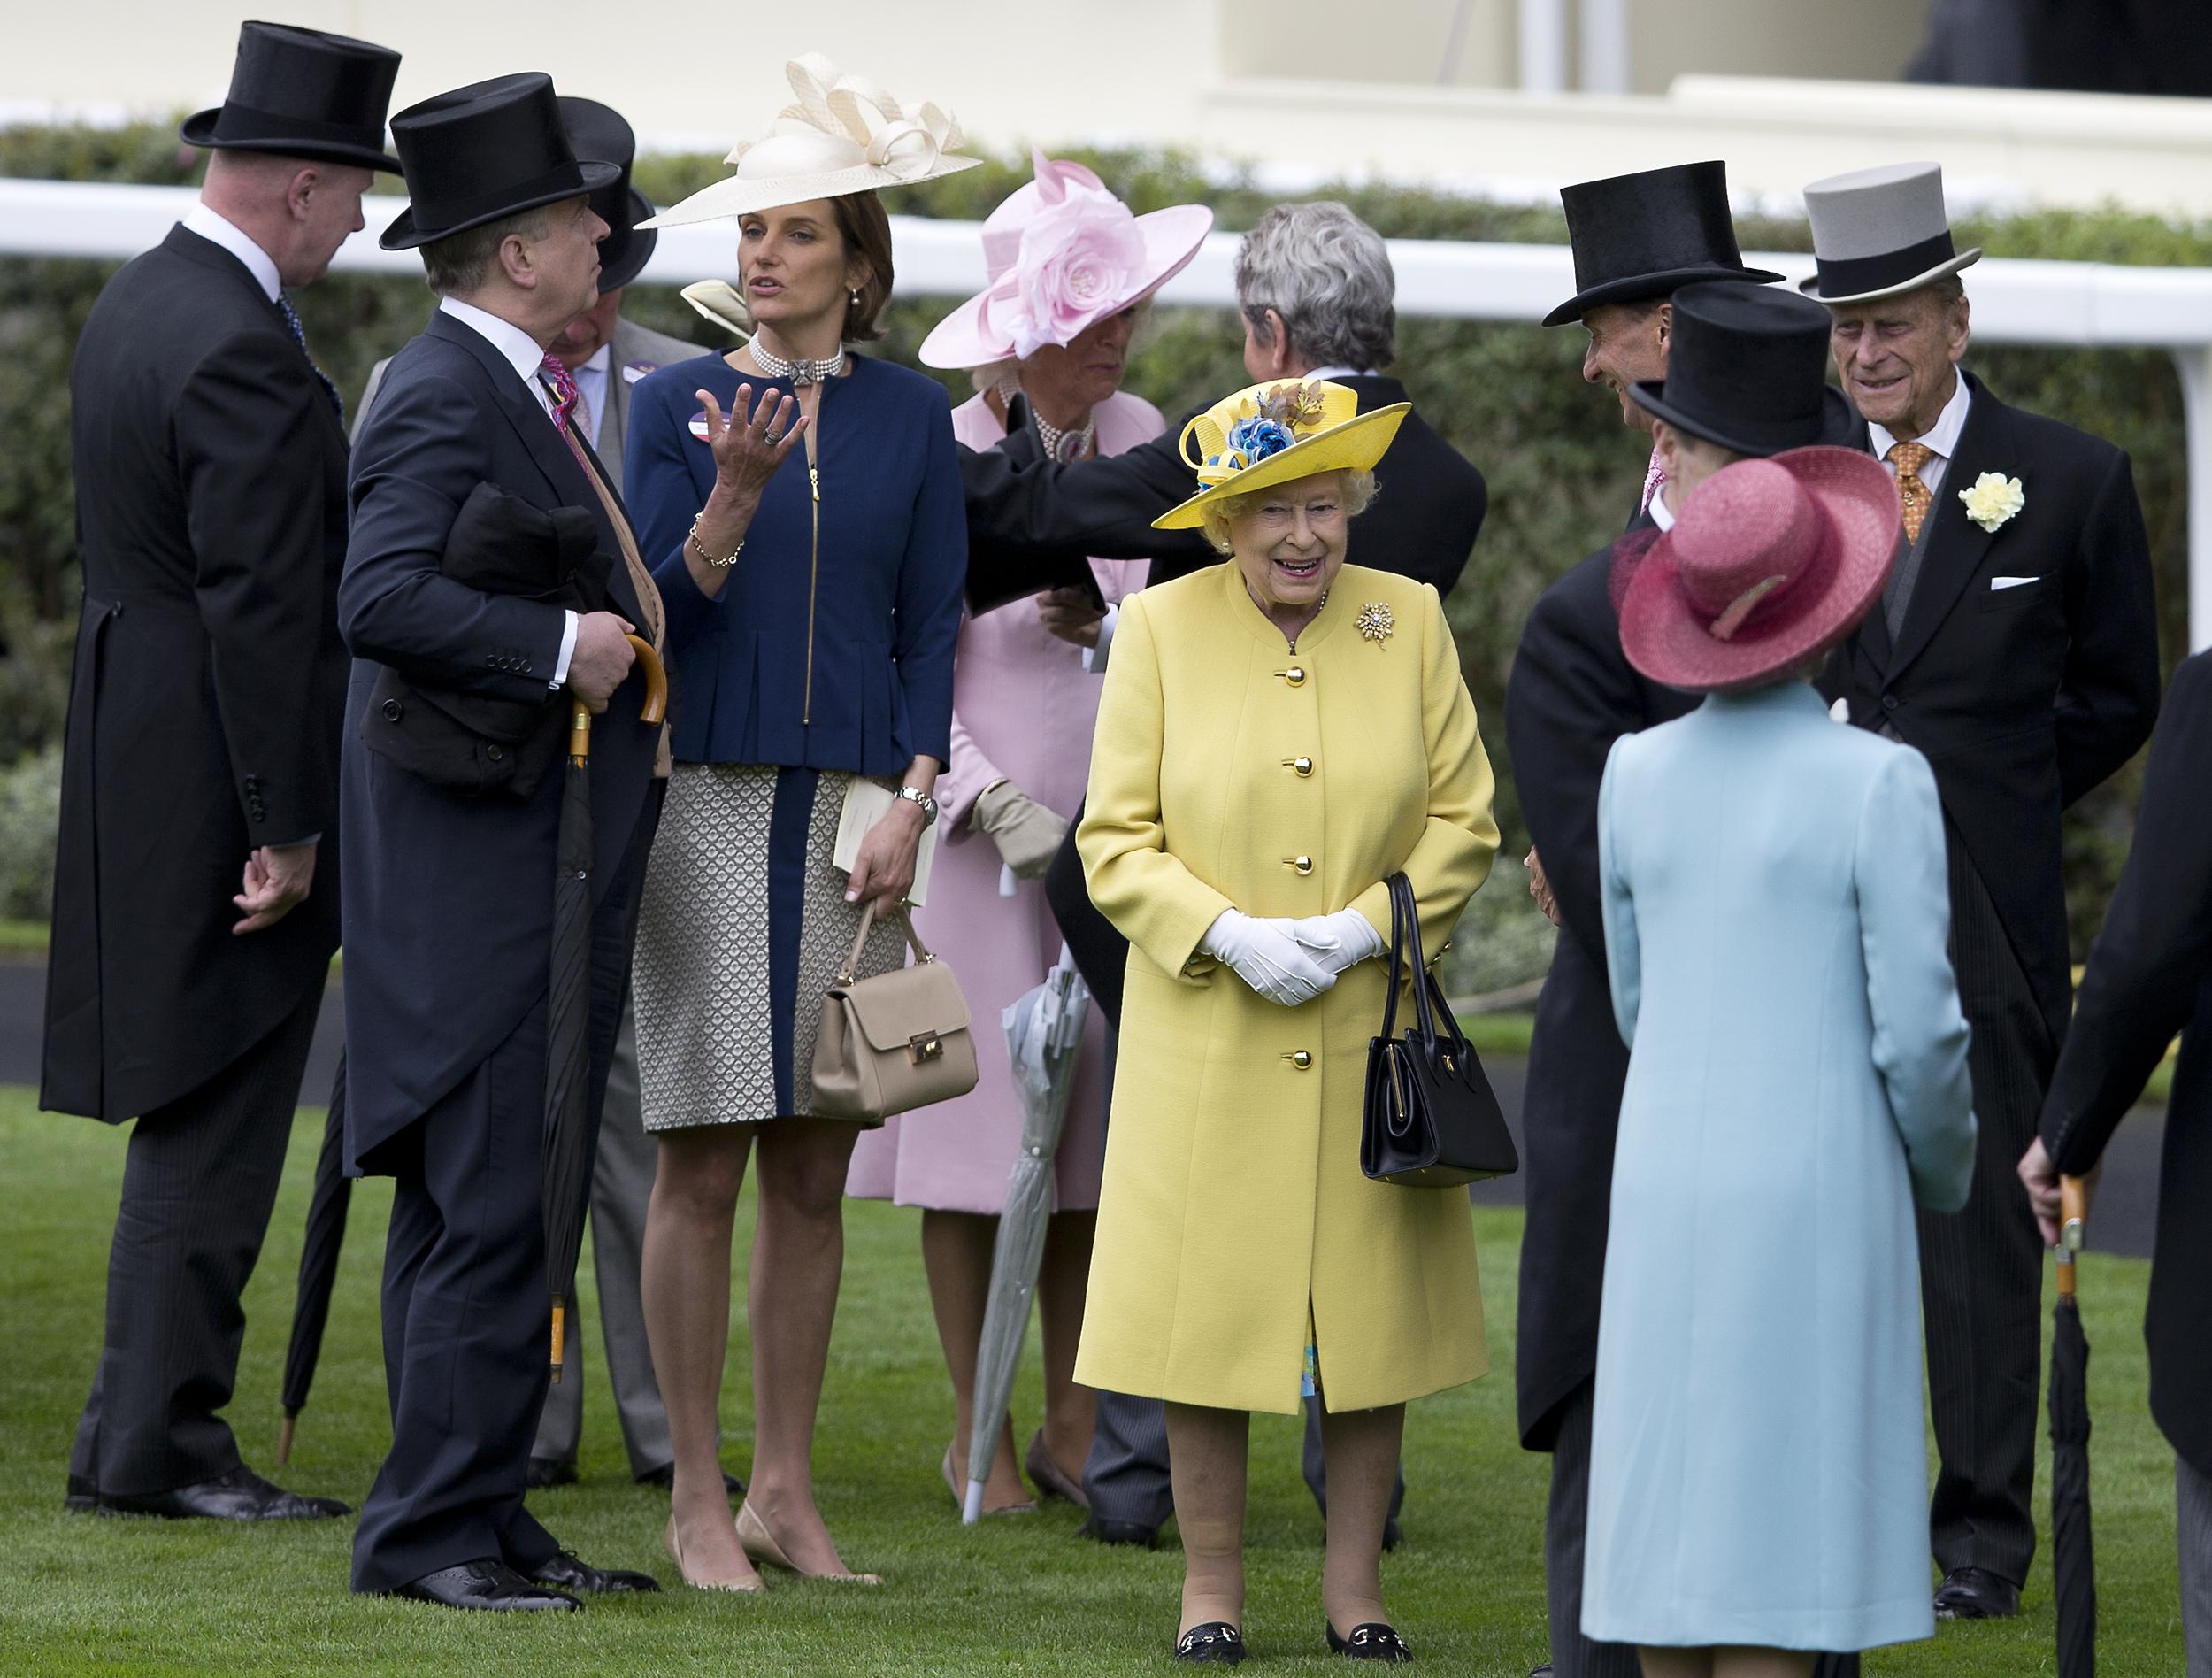  La regina ELisabetta II e il principe Filippo conversano con alcuni ospiti del Royal Ascot (foto Afp)